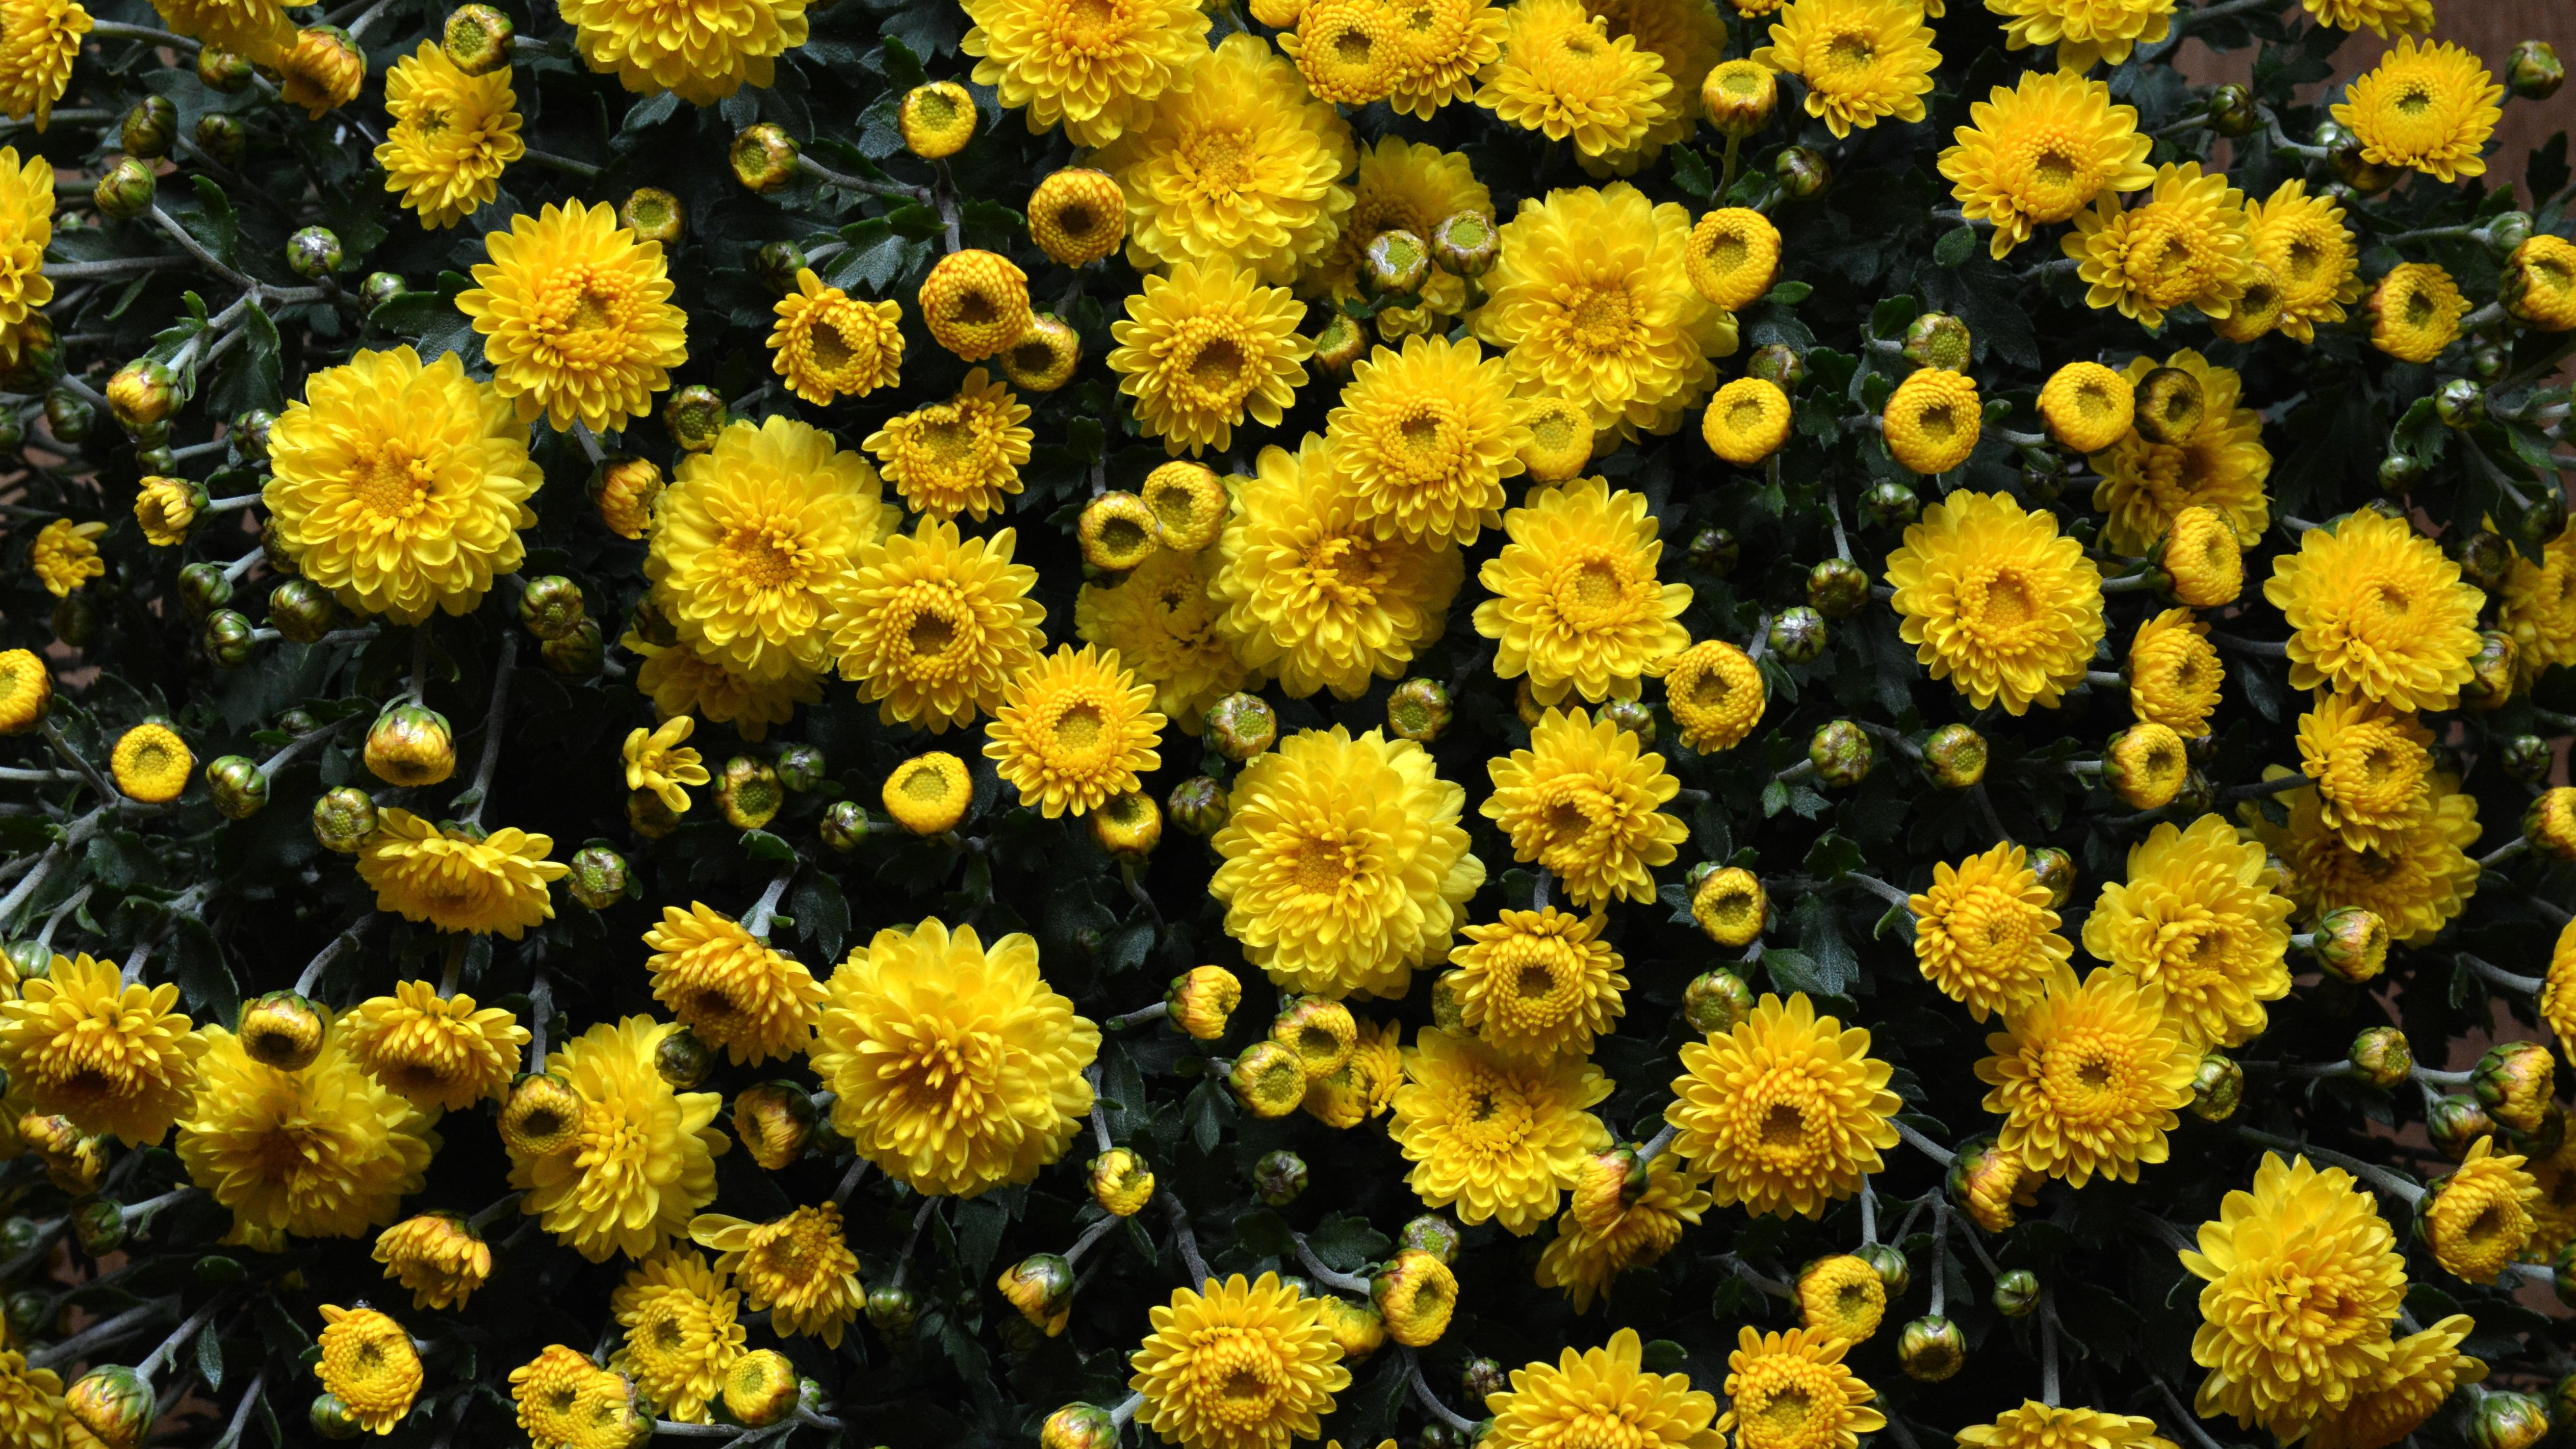 chrysanthemums-flowers-flowerbed